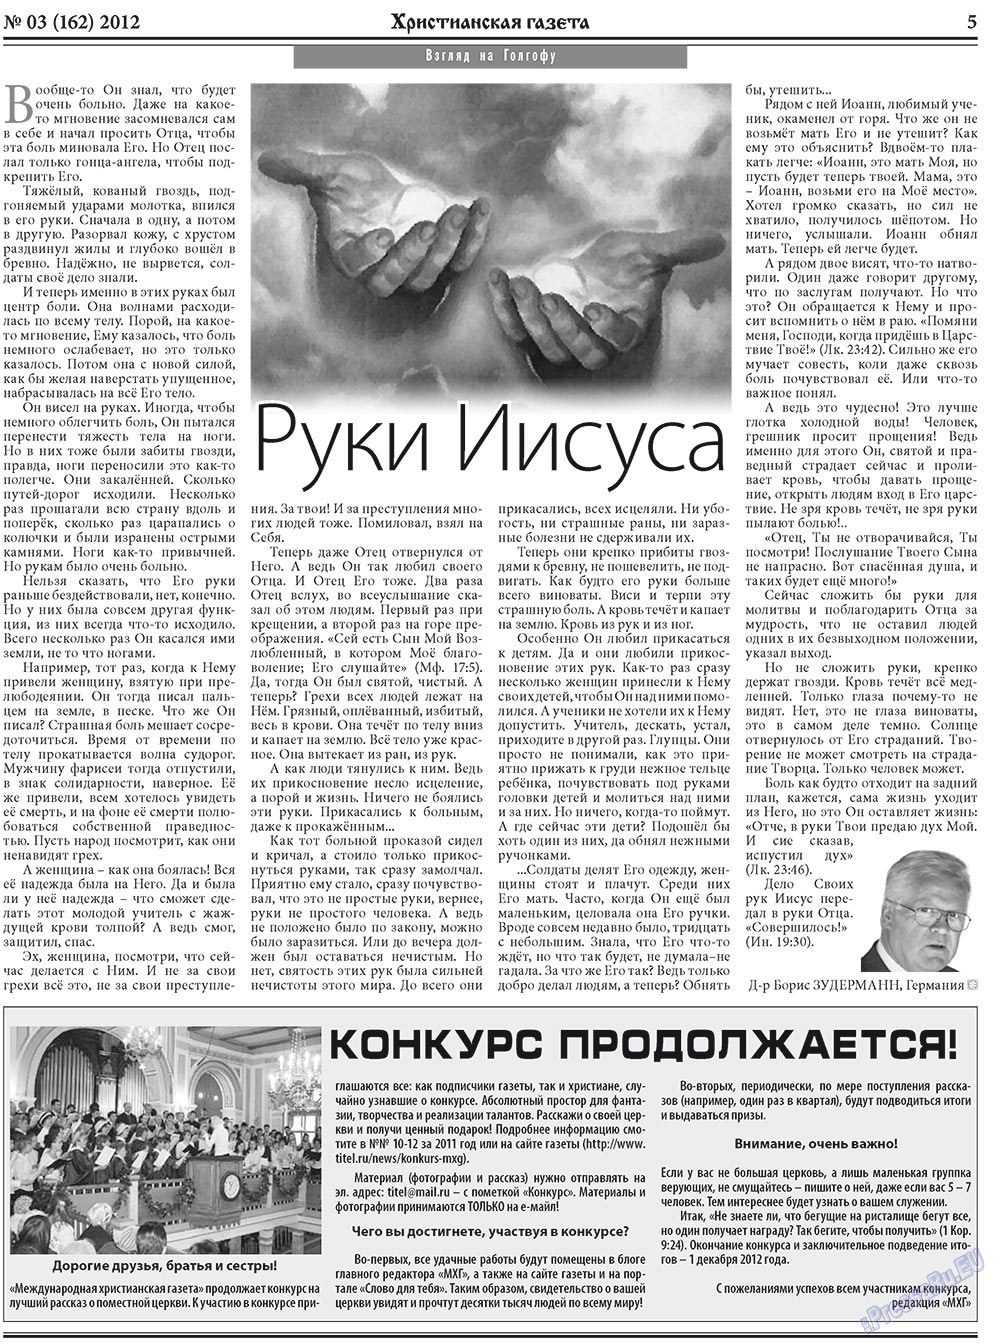 Христианская газета, газета. 2012 №3 стр.5